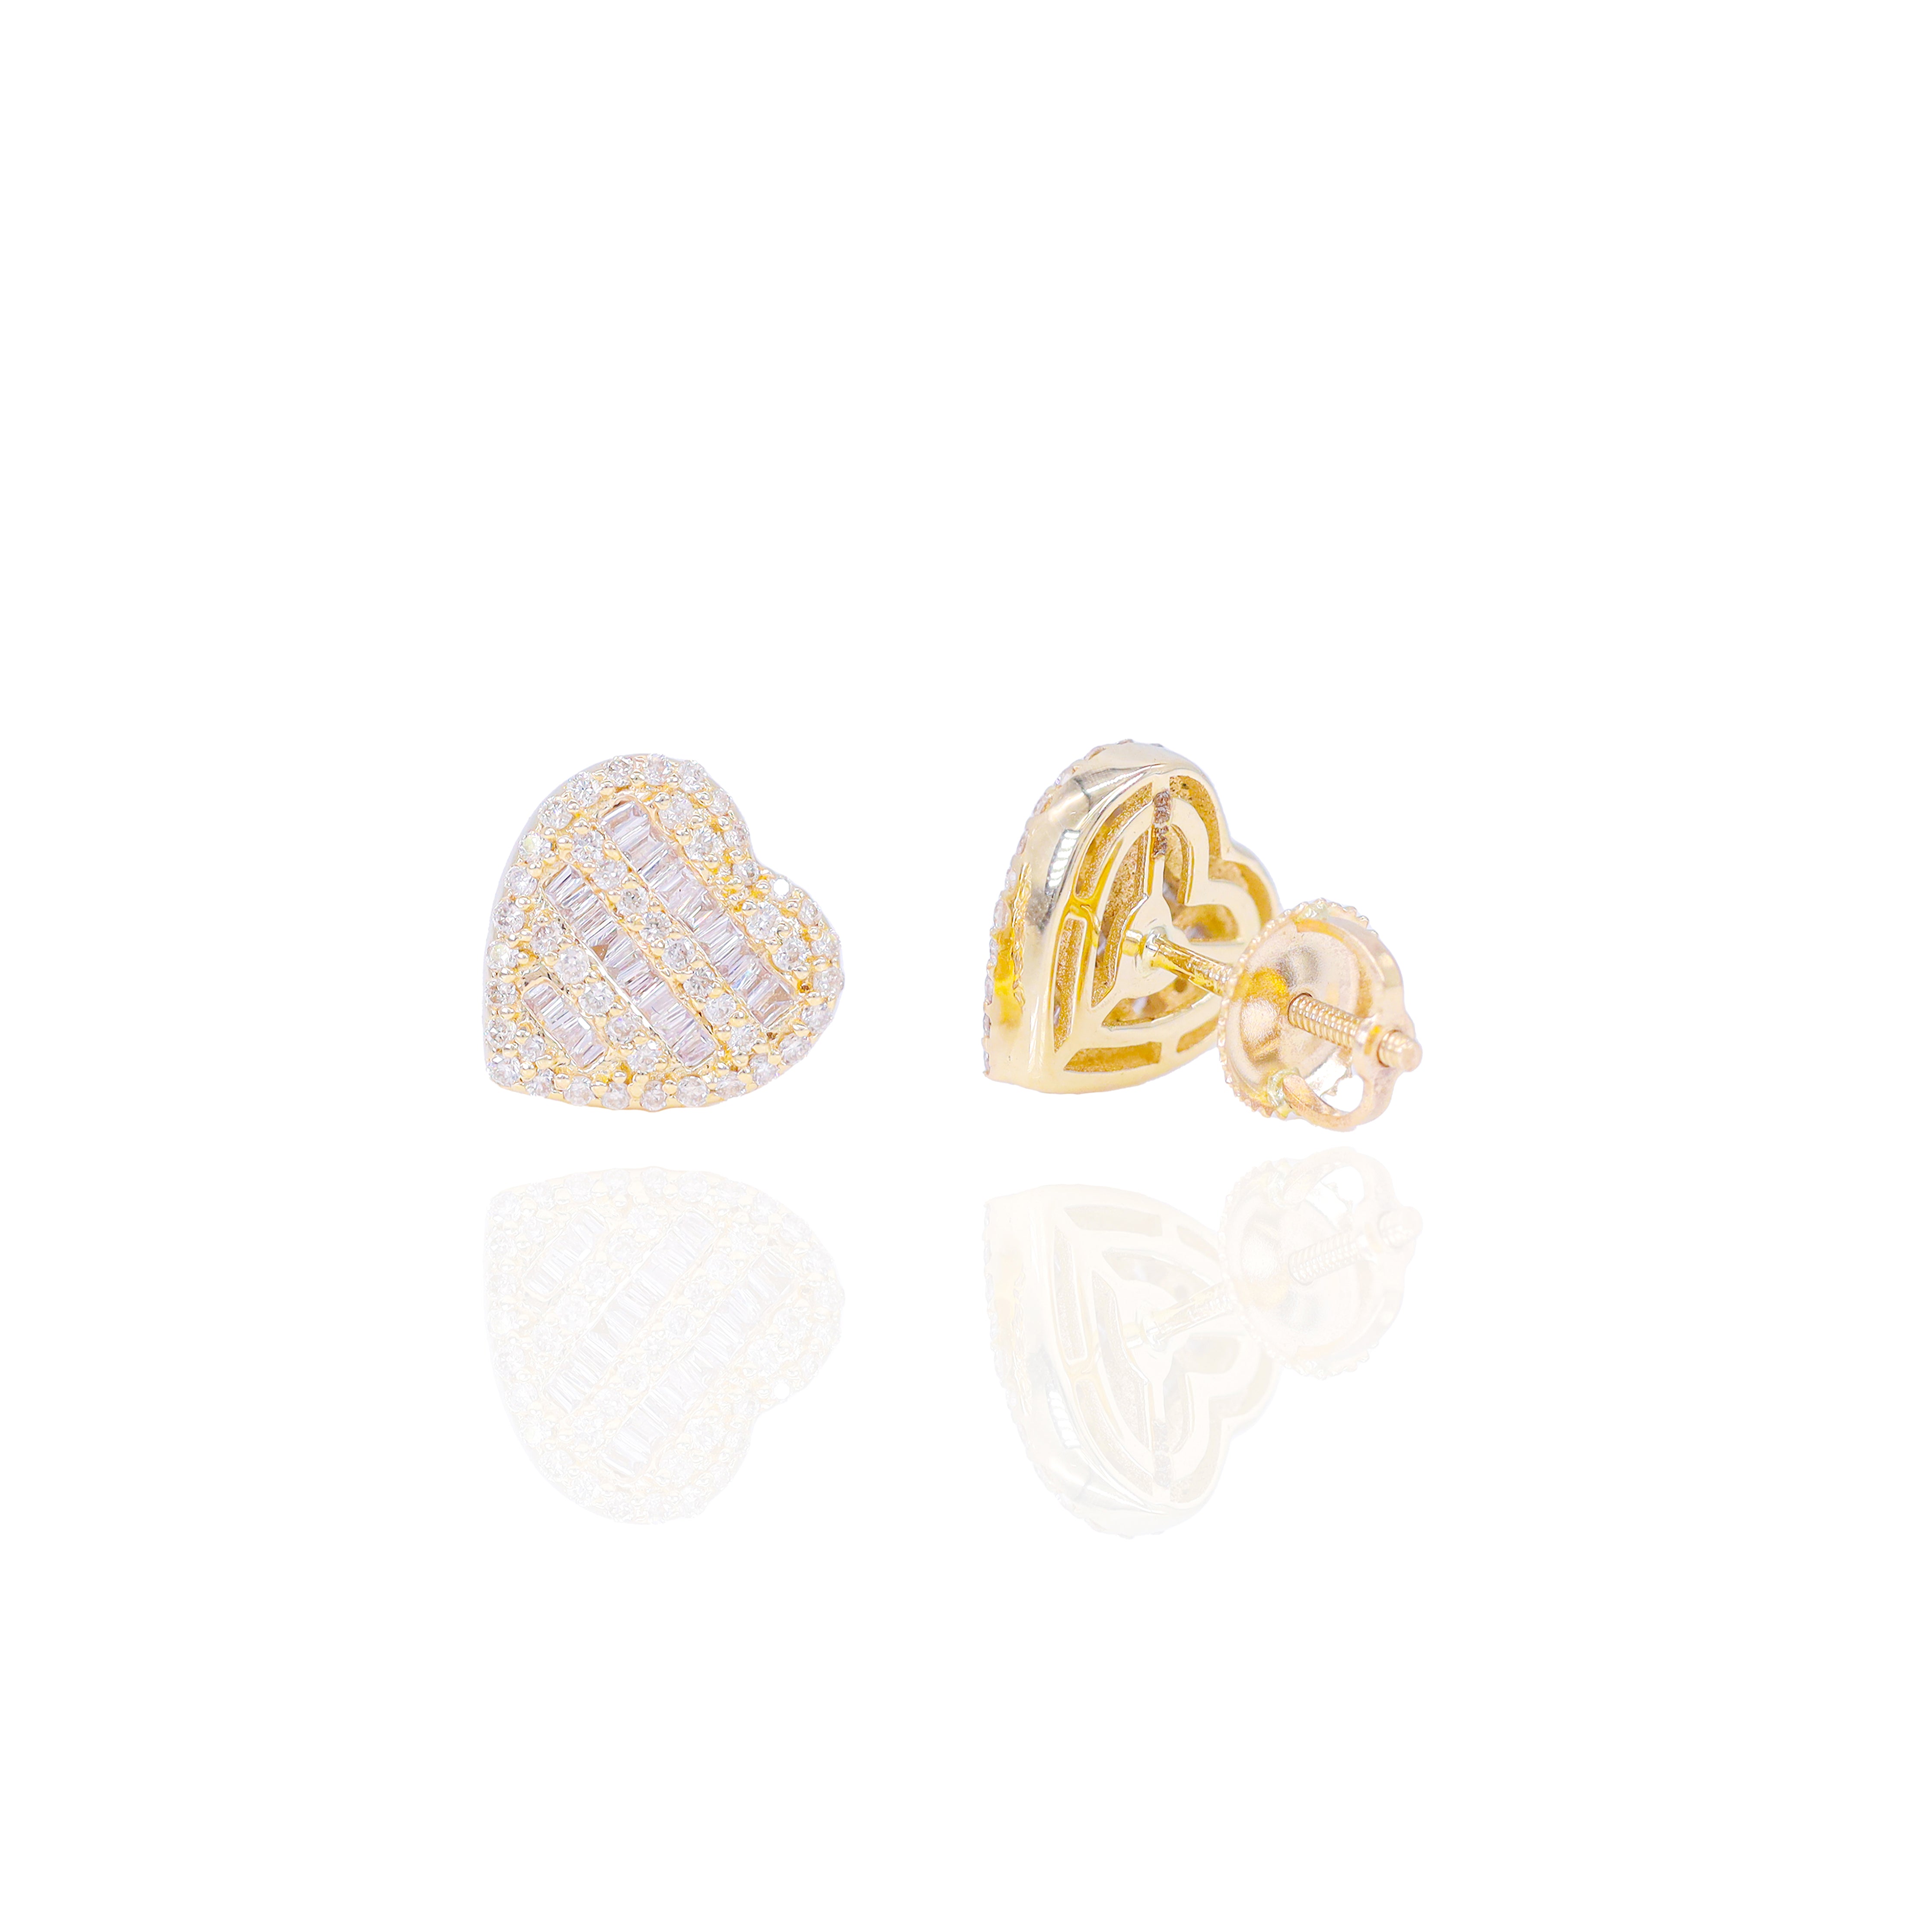 3 Row Baguette Diamond Heart Earrings